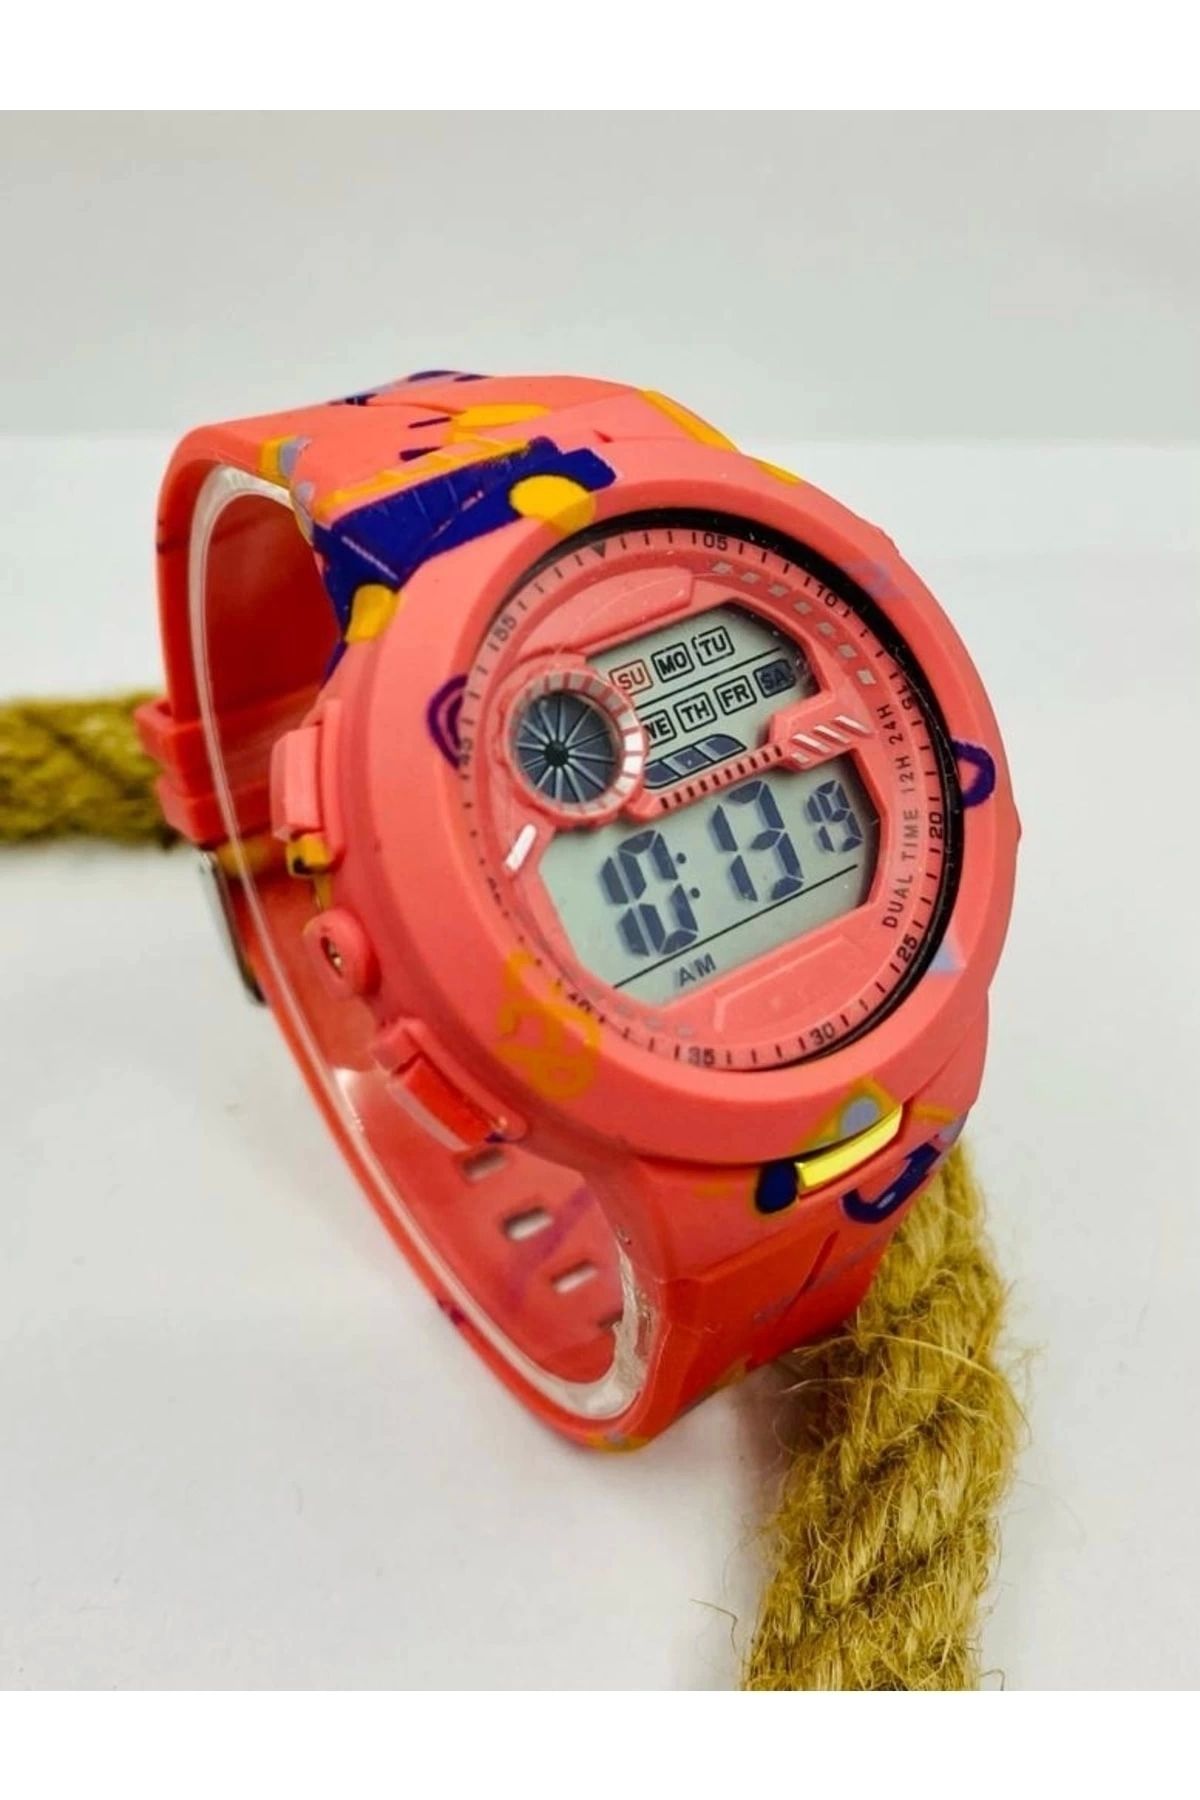 m melisa hediyelik Turuncu Renk Kordonlu Renkli Işıklı Takvim Özellikli Çocuk Genç Kol Saati Mls-463